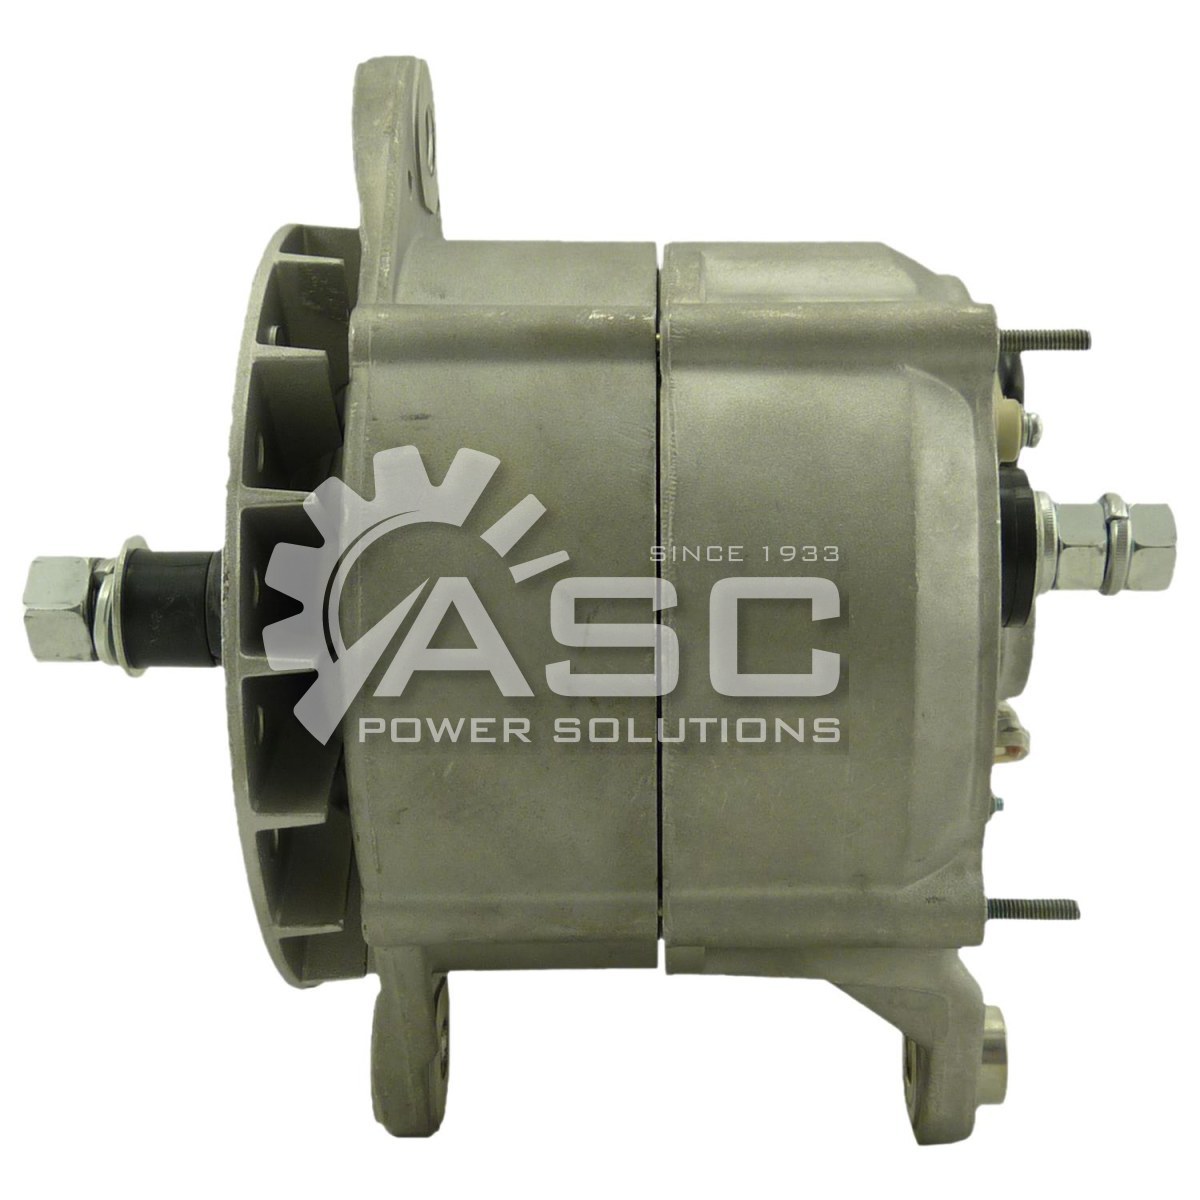 A241409_ASC, Alternator, 12V, 135 Amp, IR, EF, CW, Bosch, Reman